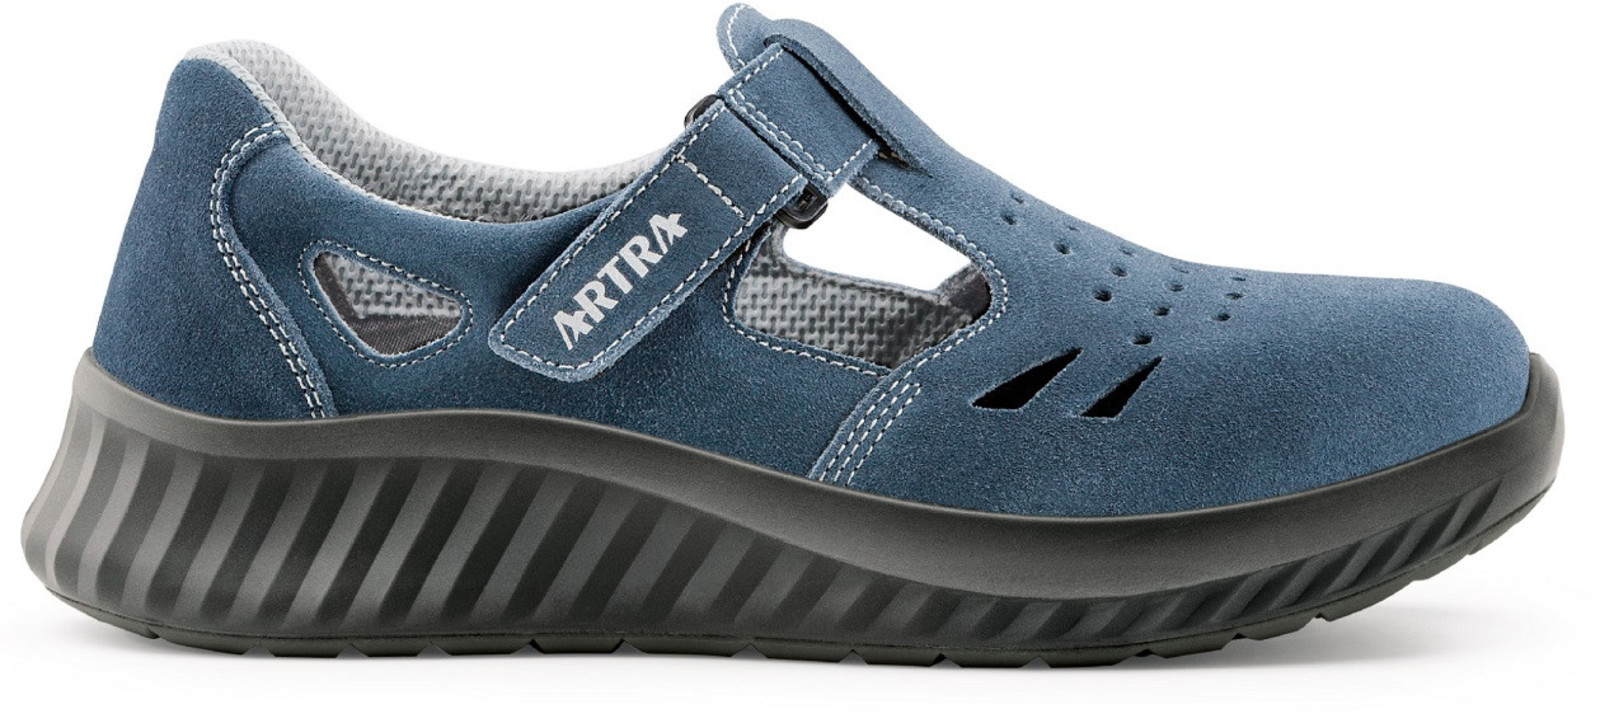 Bezpečnostné sandále Artra Armen 9007 9360 S1 - veľkosť: 38, farba: modrá